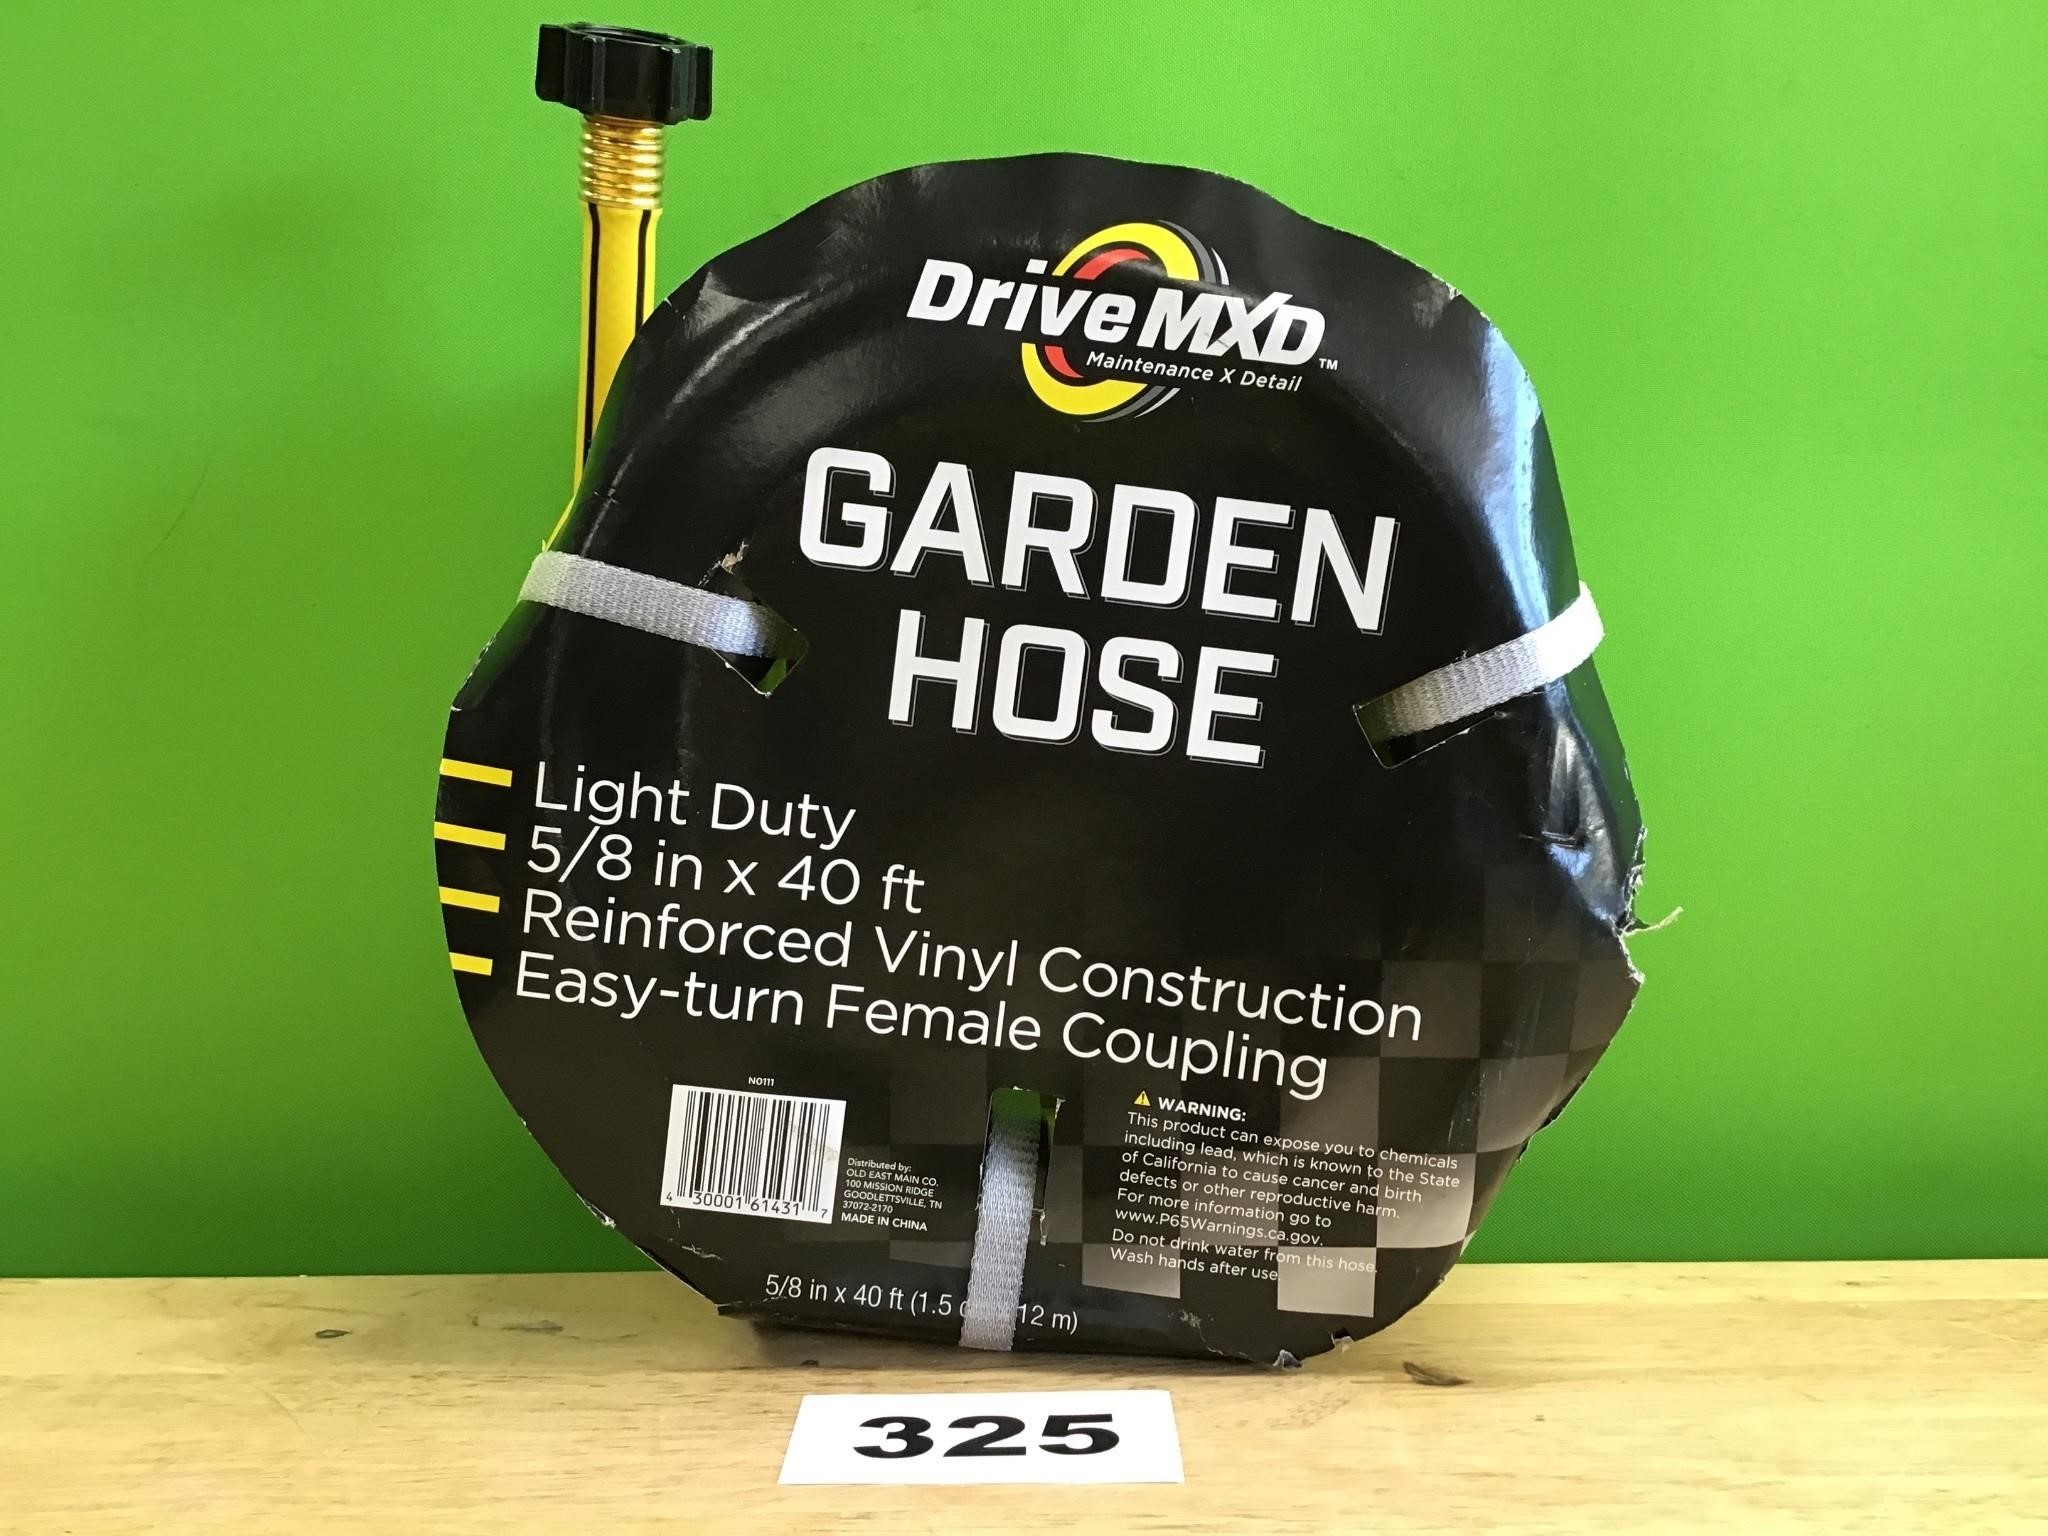 DriveMXD Light Duty 40’ Yellow Garden Hose